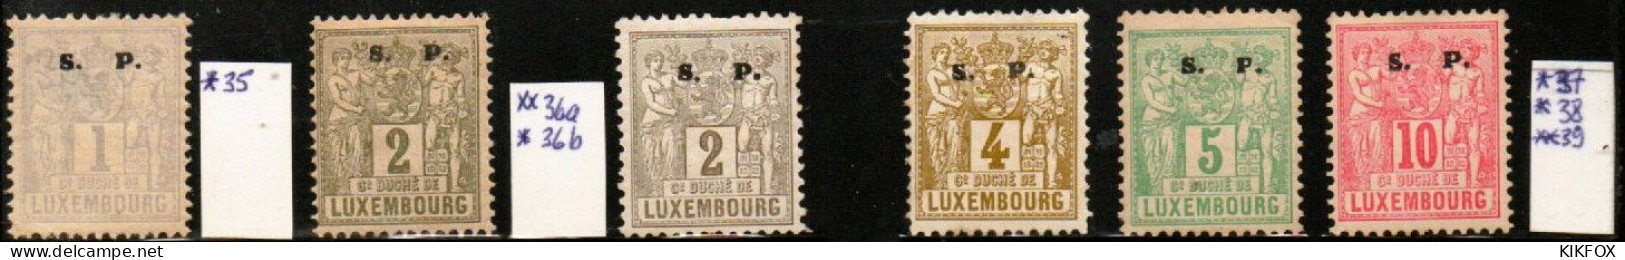 Luxembourg , Luxemburg ,1882, MI 35 - 39   FREIMARKEN ALLEGORIE, S.P LARGE, UNGEBRAUCHT, CHARNIERE - Dienst